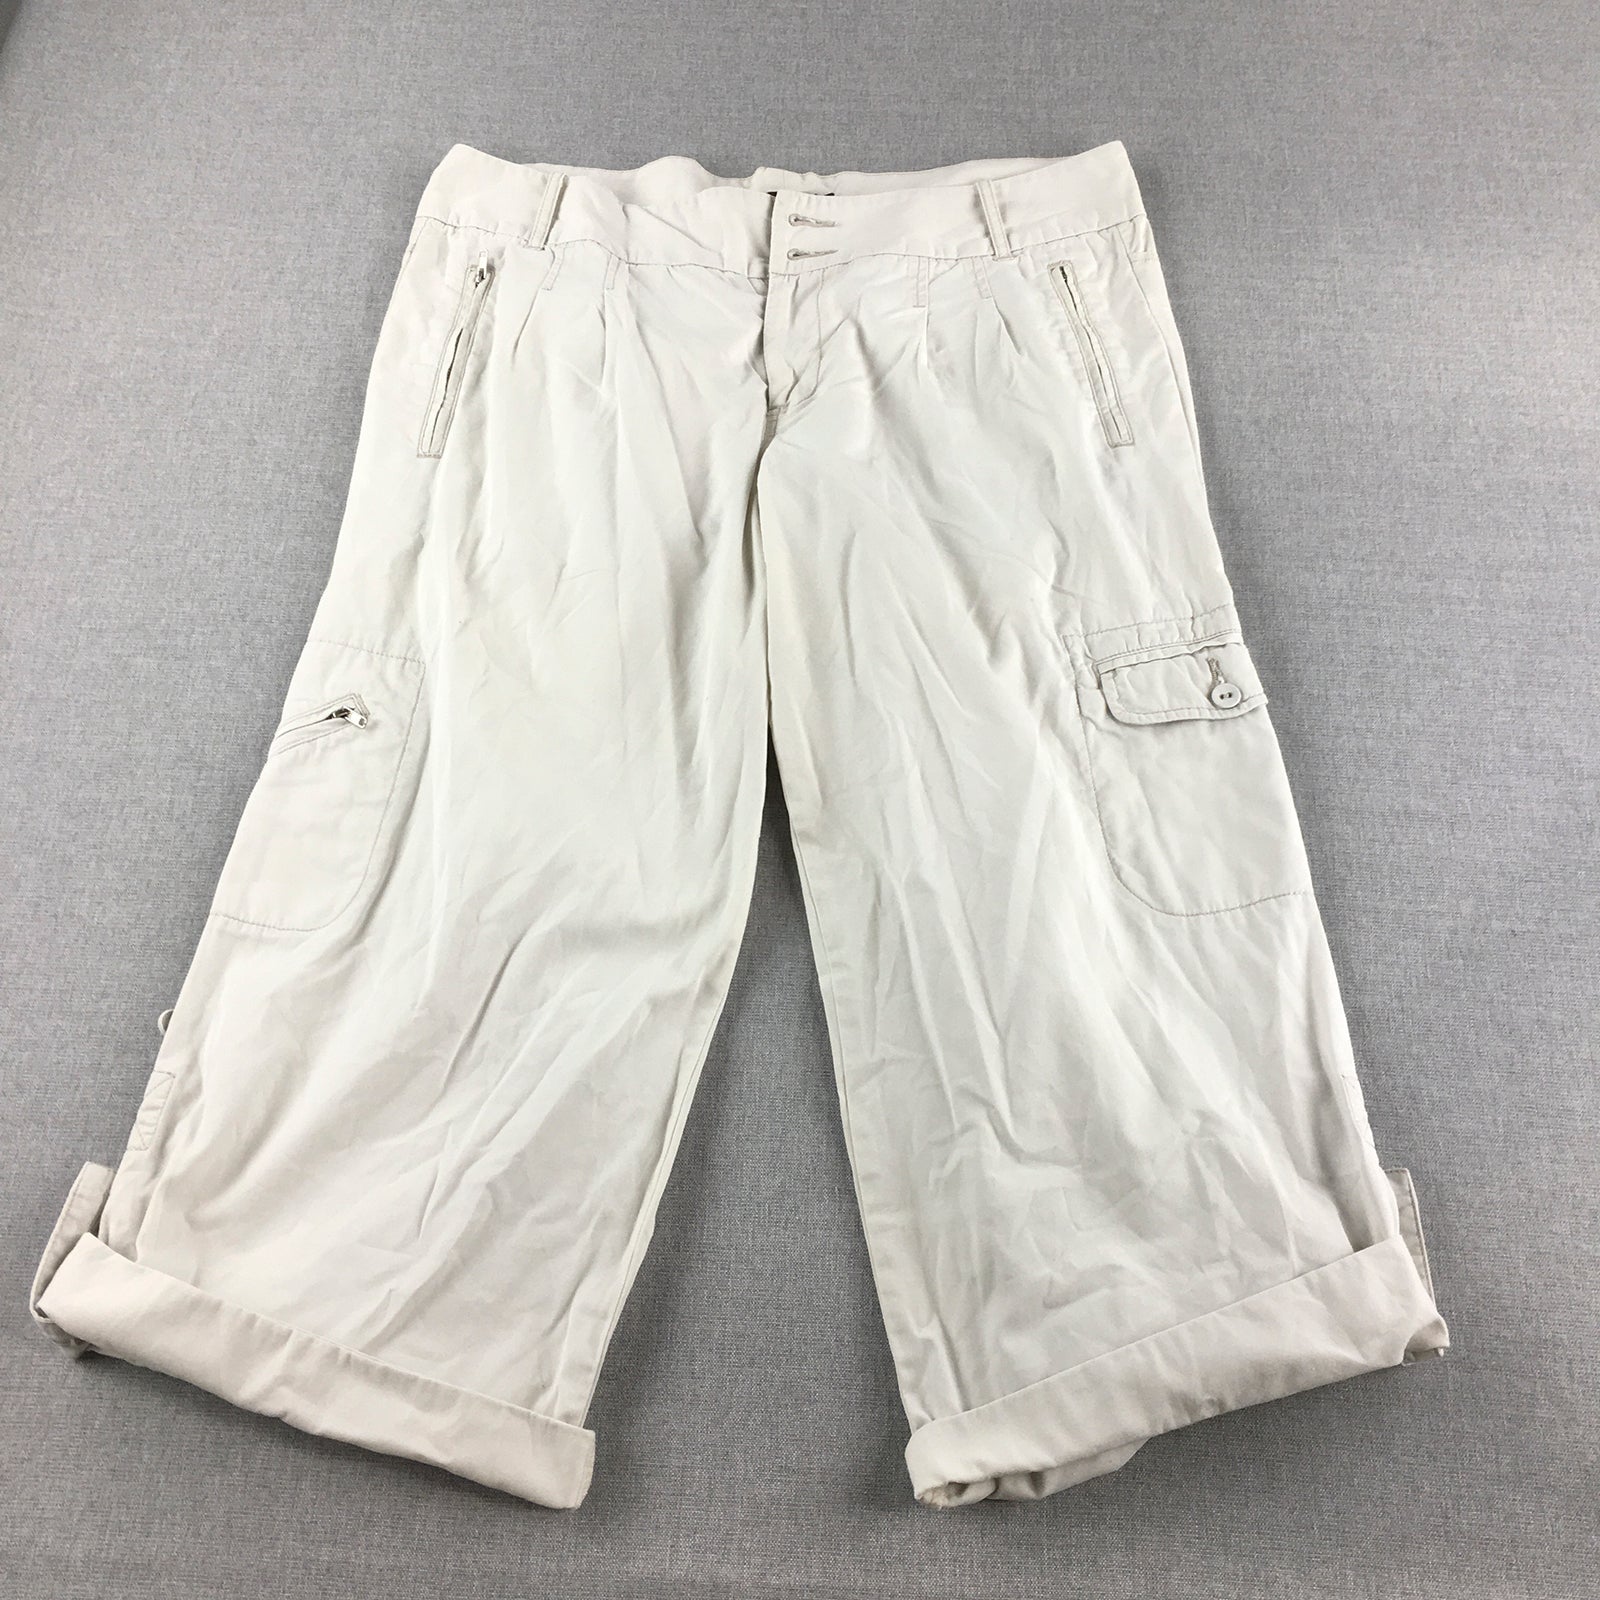 Colorado Womens Capri Pants Size 14 White Cargo Pockets 3/4 Length